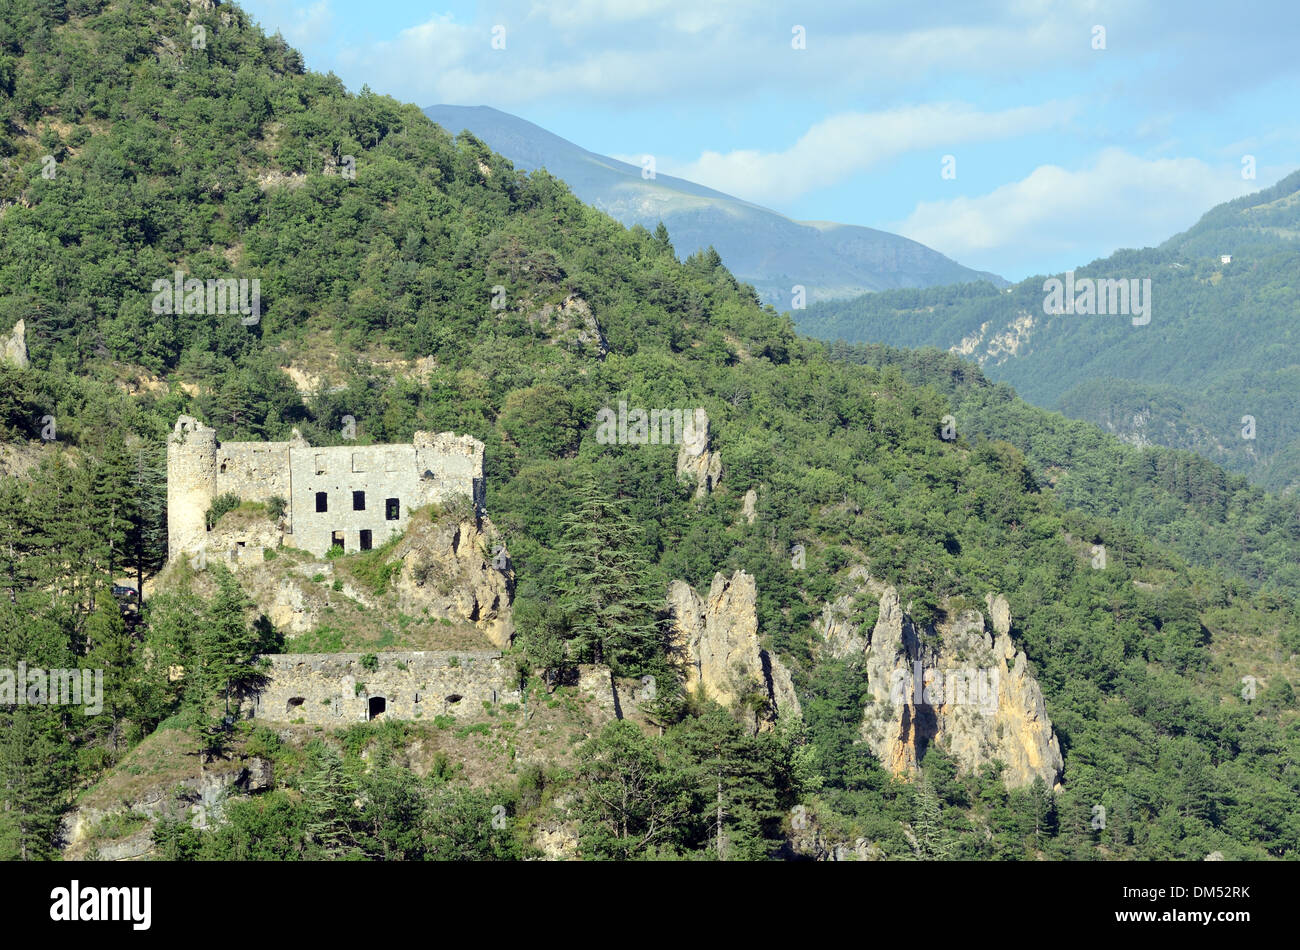 Ruins of Medieval Castle or Château de Reine-Jeanne Guillaumes Haut-Var Alpes-Maritimes France Stock Photo